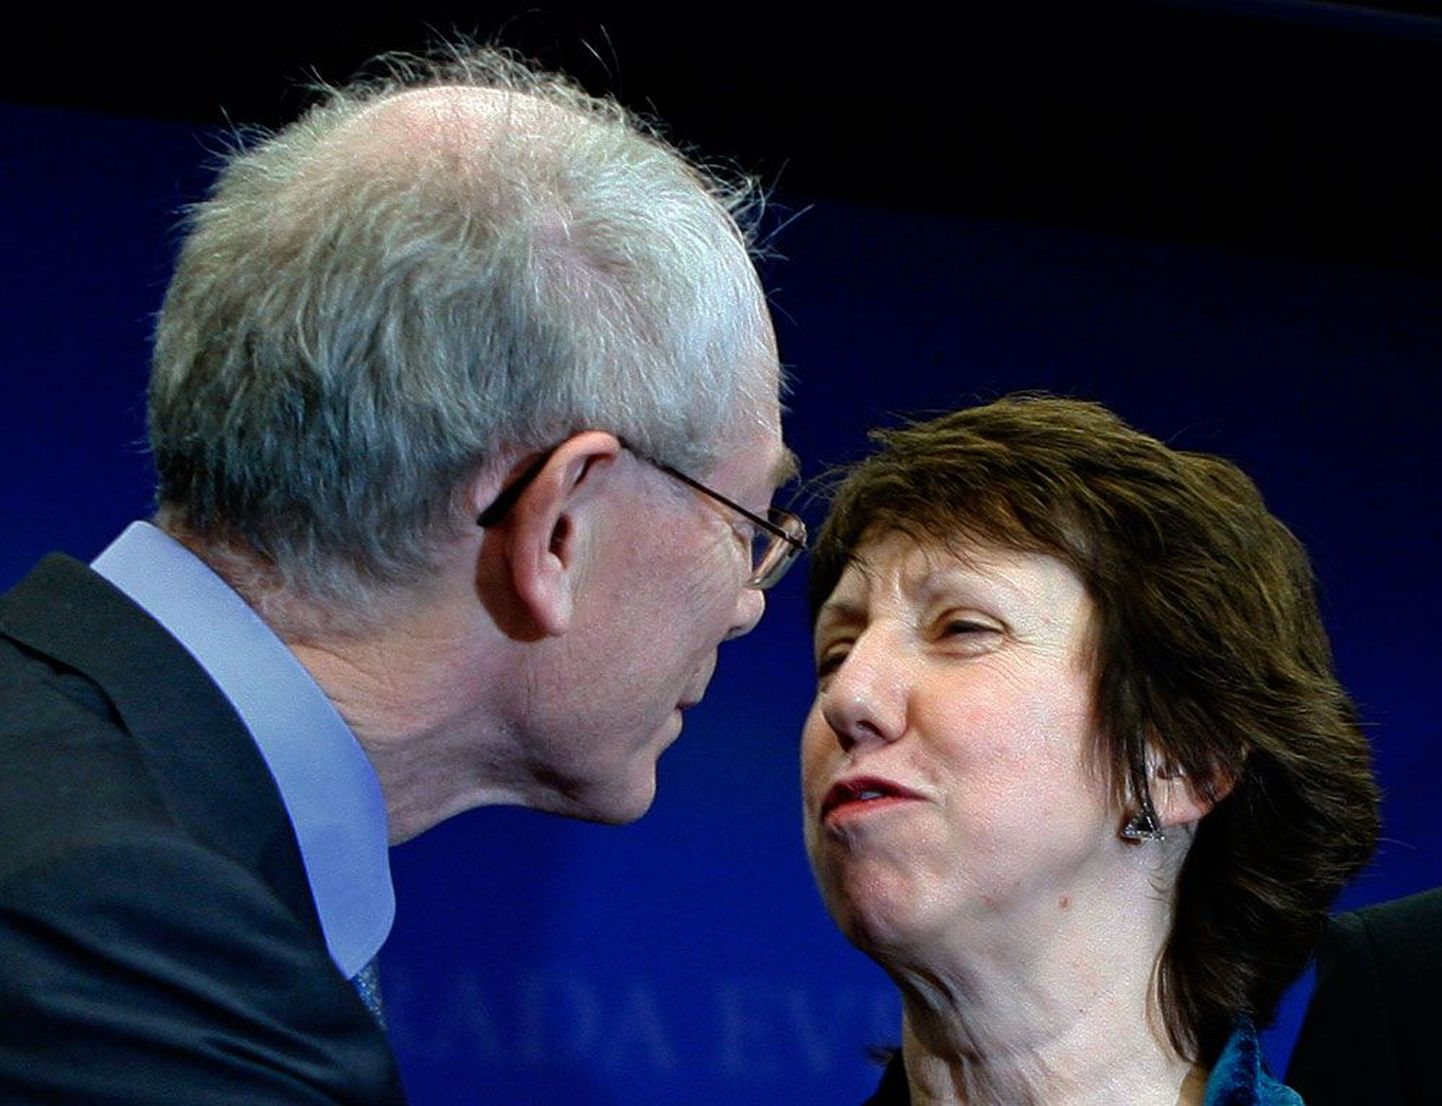 Euroopa Liidu Nõukogu esimeseks alaliseks presidendiks määratud Herman Van Rompuy ning ELi välis- ja julgeolekupoliitika kõrgeks esindajaks saanud Catherine Ashton teineteist õnnitlemas.